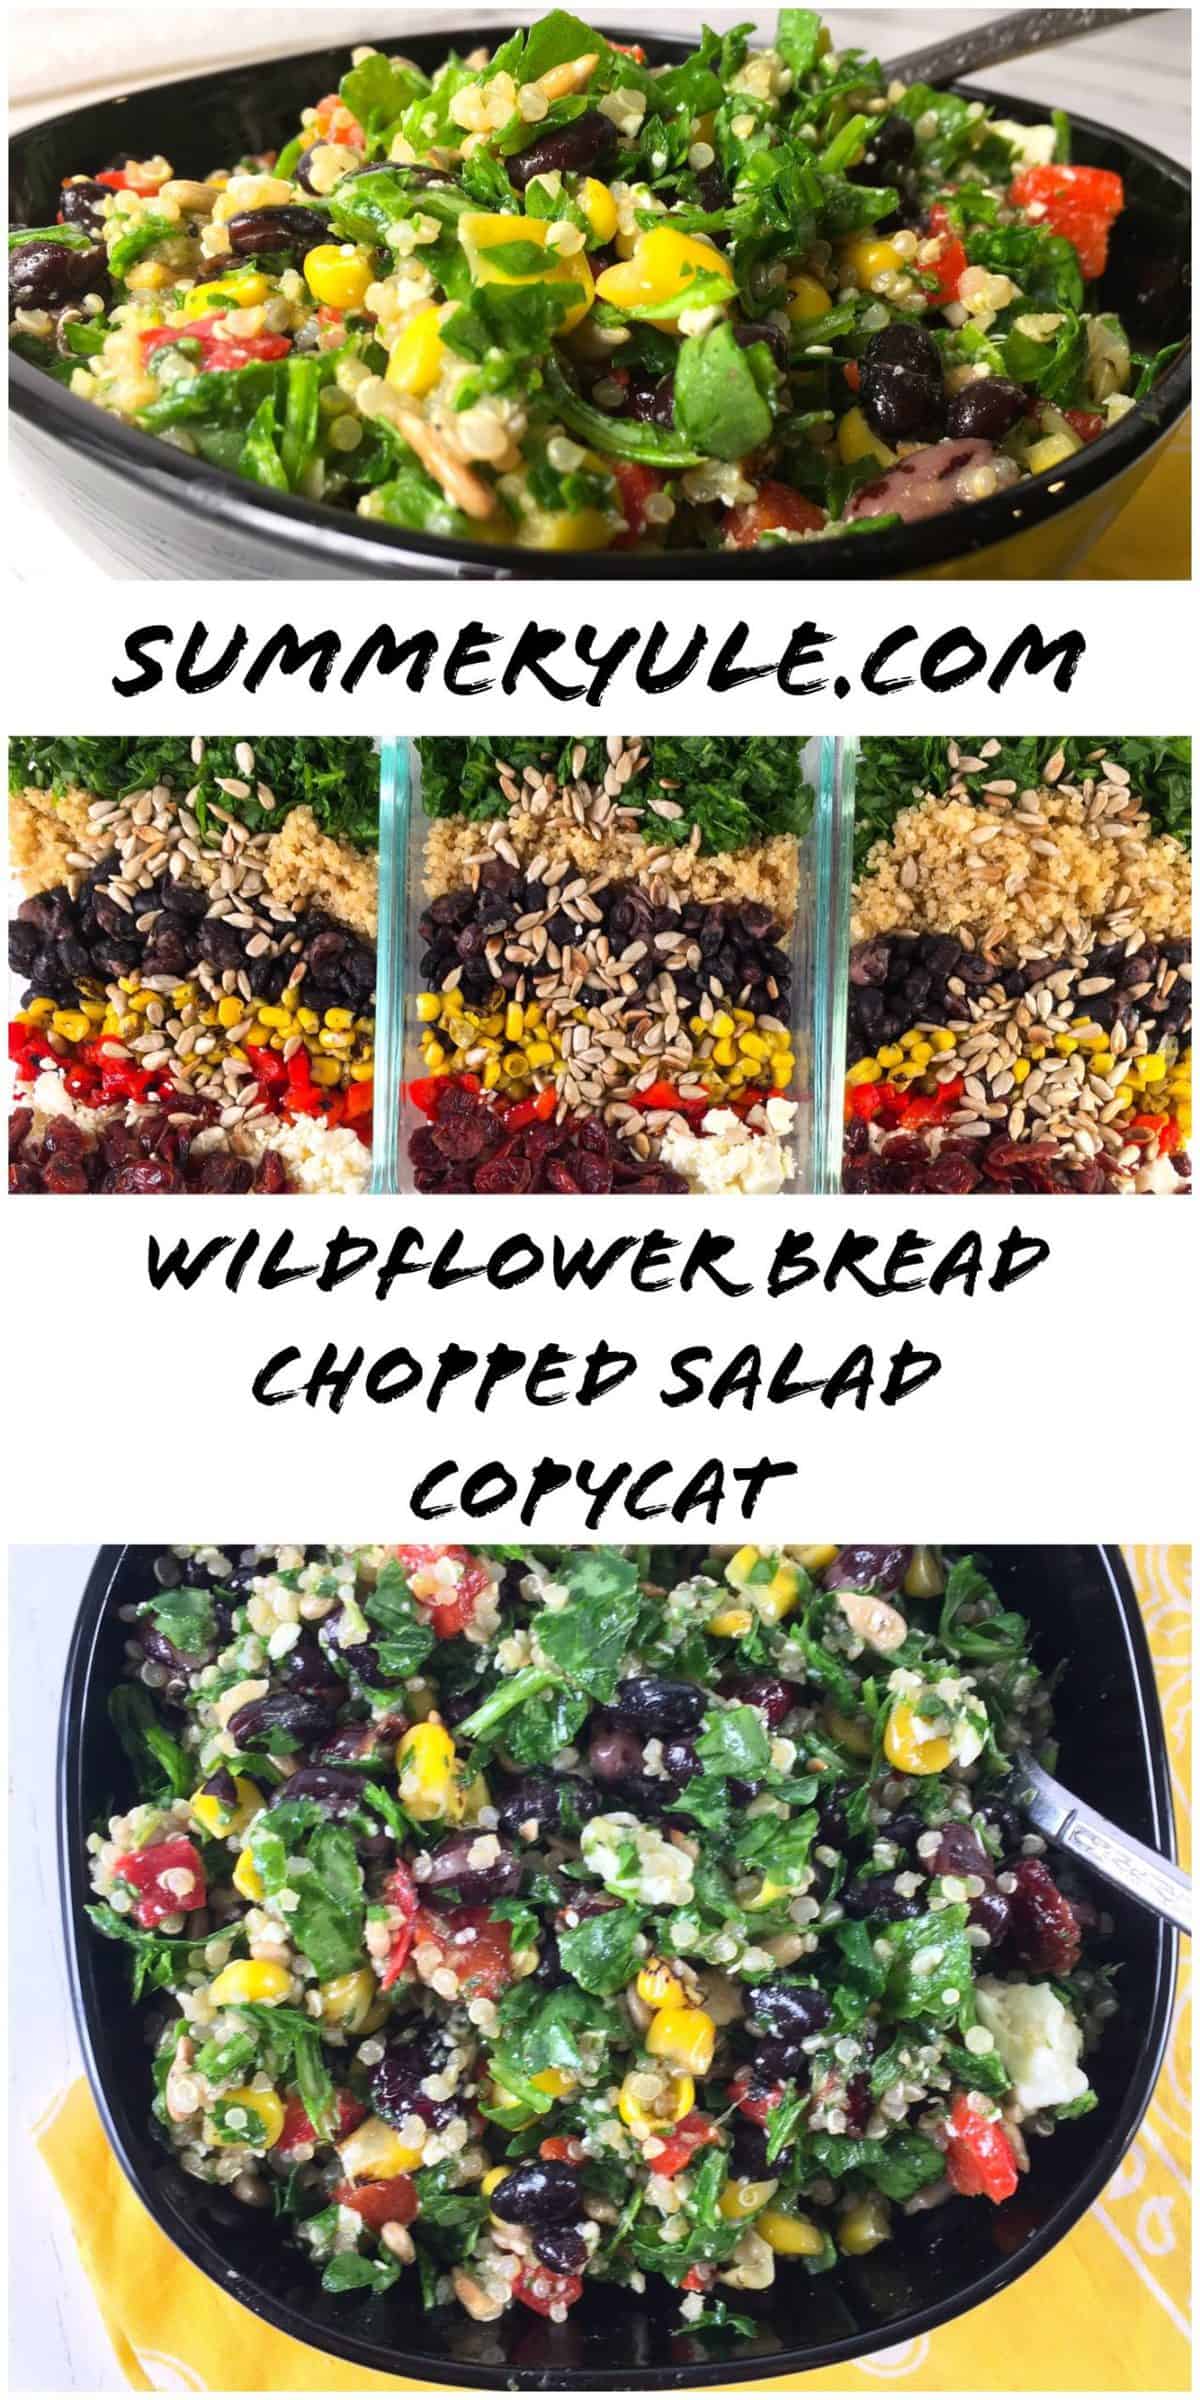 Wildflower Bread Chopped Salad Copycat Recipe (Gluten-free!)